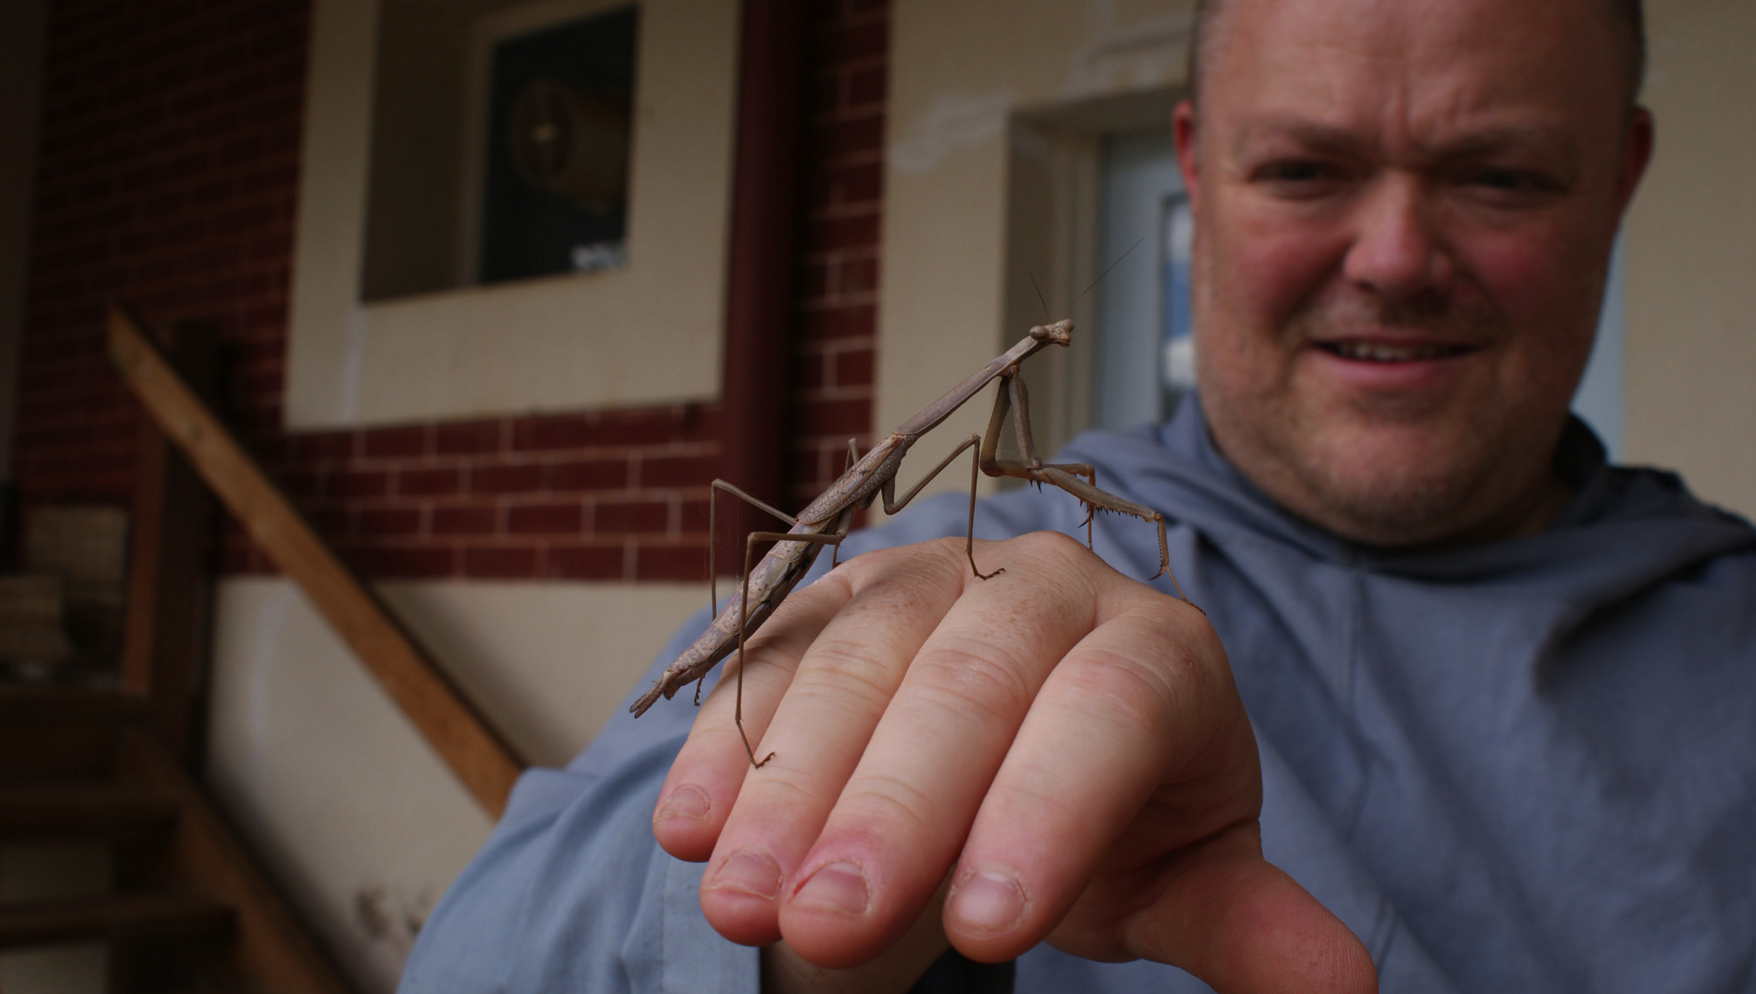 Praying mantis found at retreat house